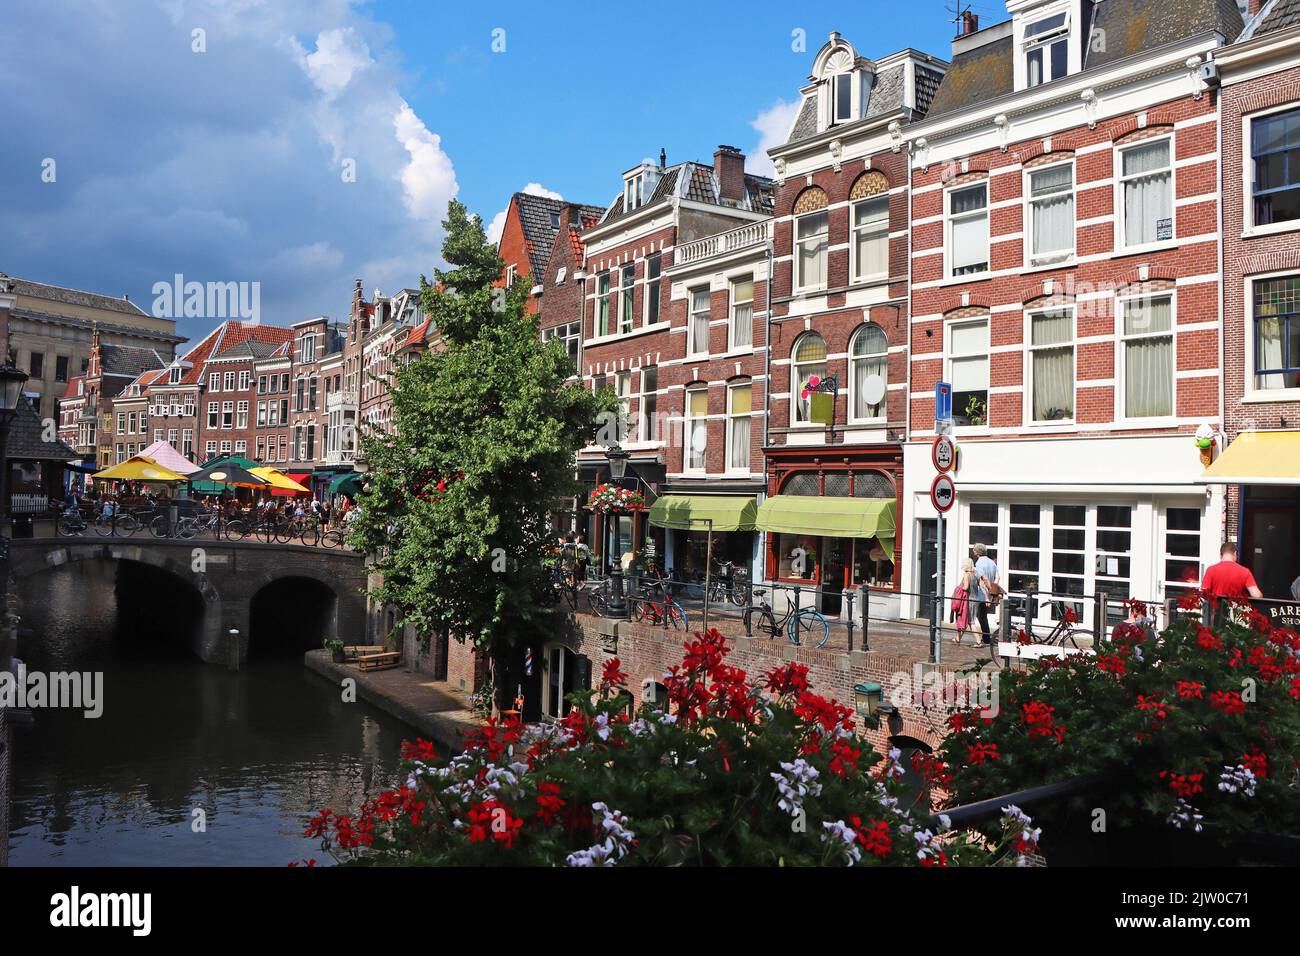 Centre-ville d'Amsterdam, maisons anciennes traditionnelles et canaux. Pays-Bas, Europe. Banque D'Images